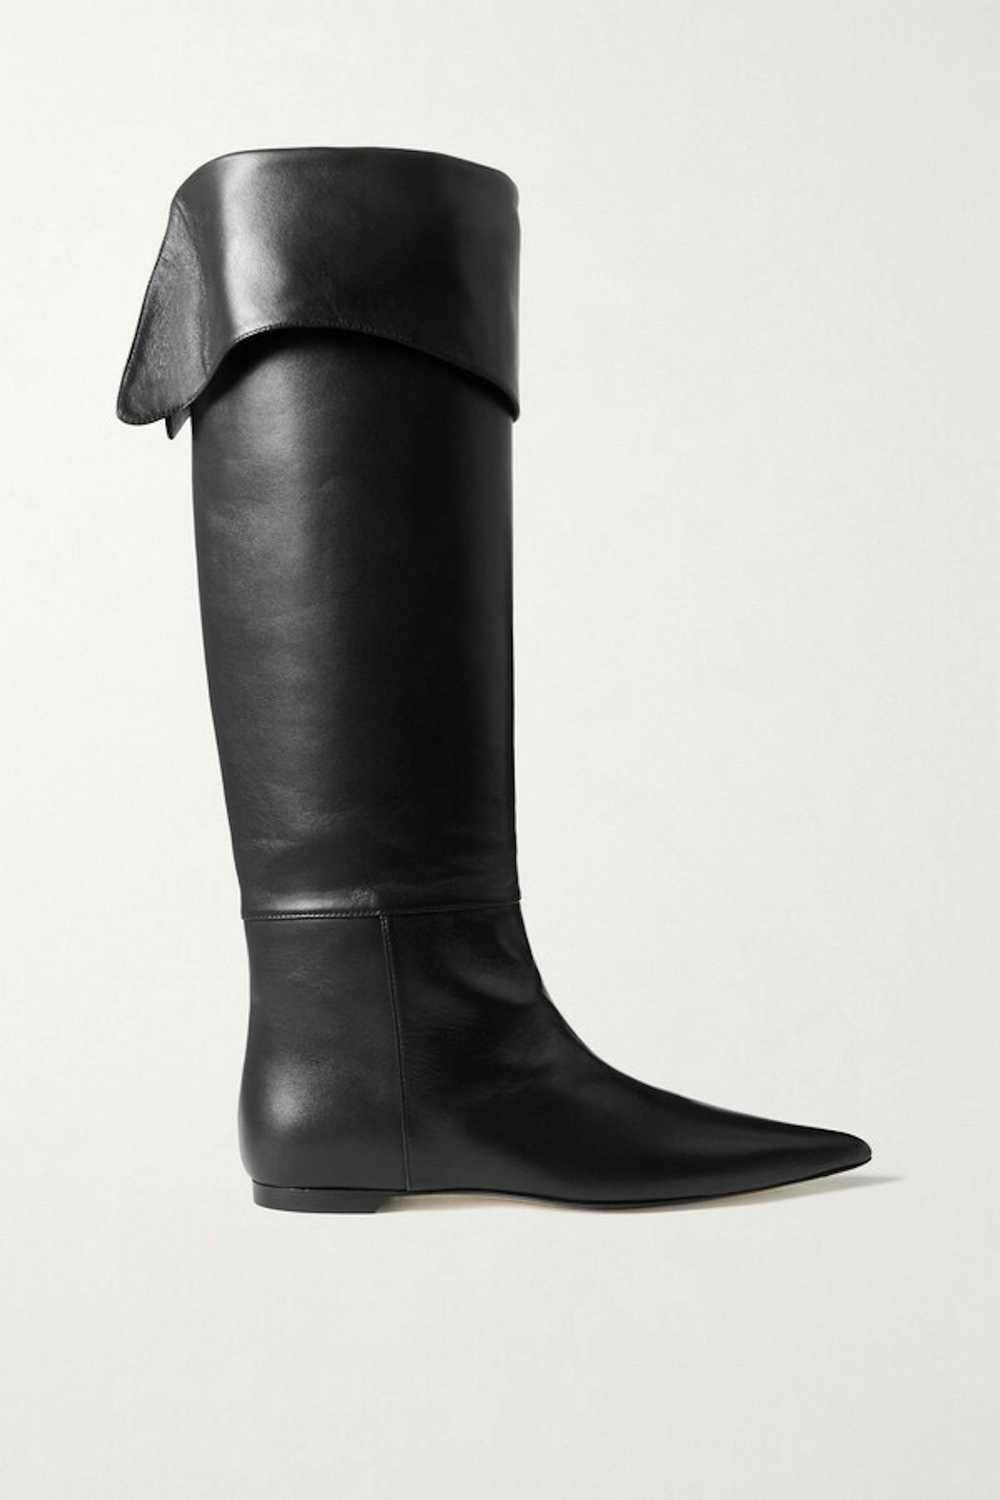 KHAITE KHAITE Diego Leather Knee Boots Size 38.5 - image 1